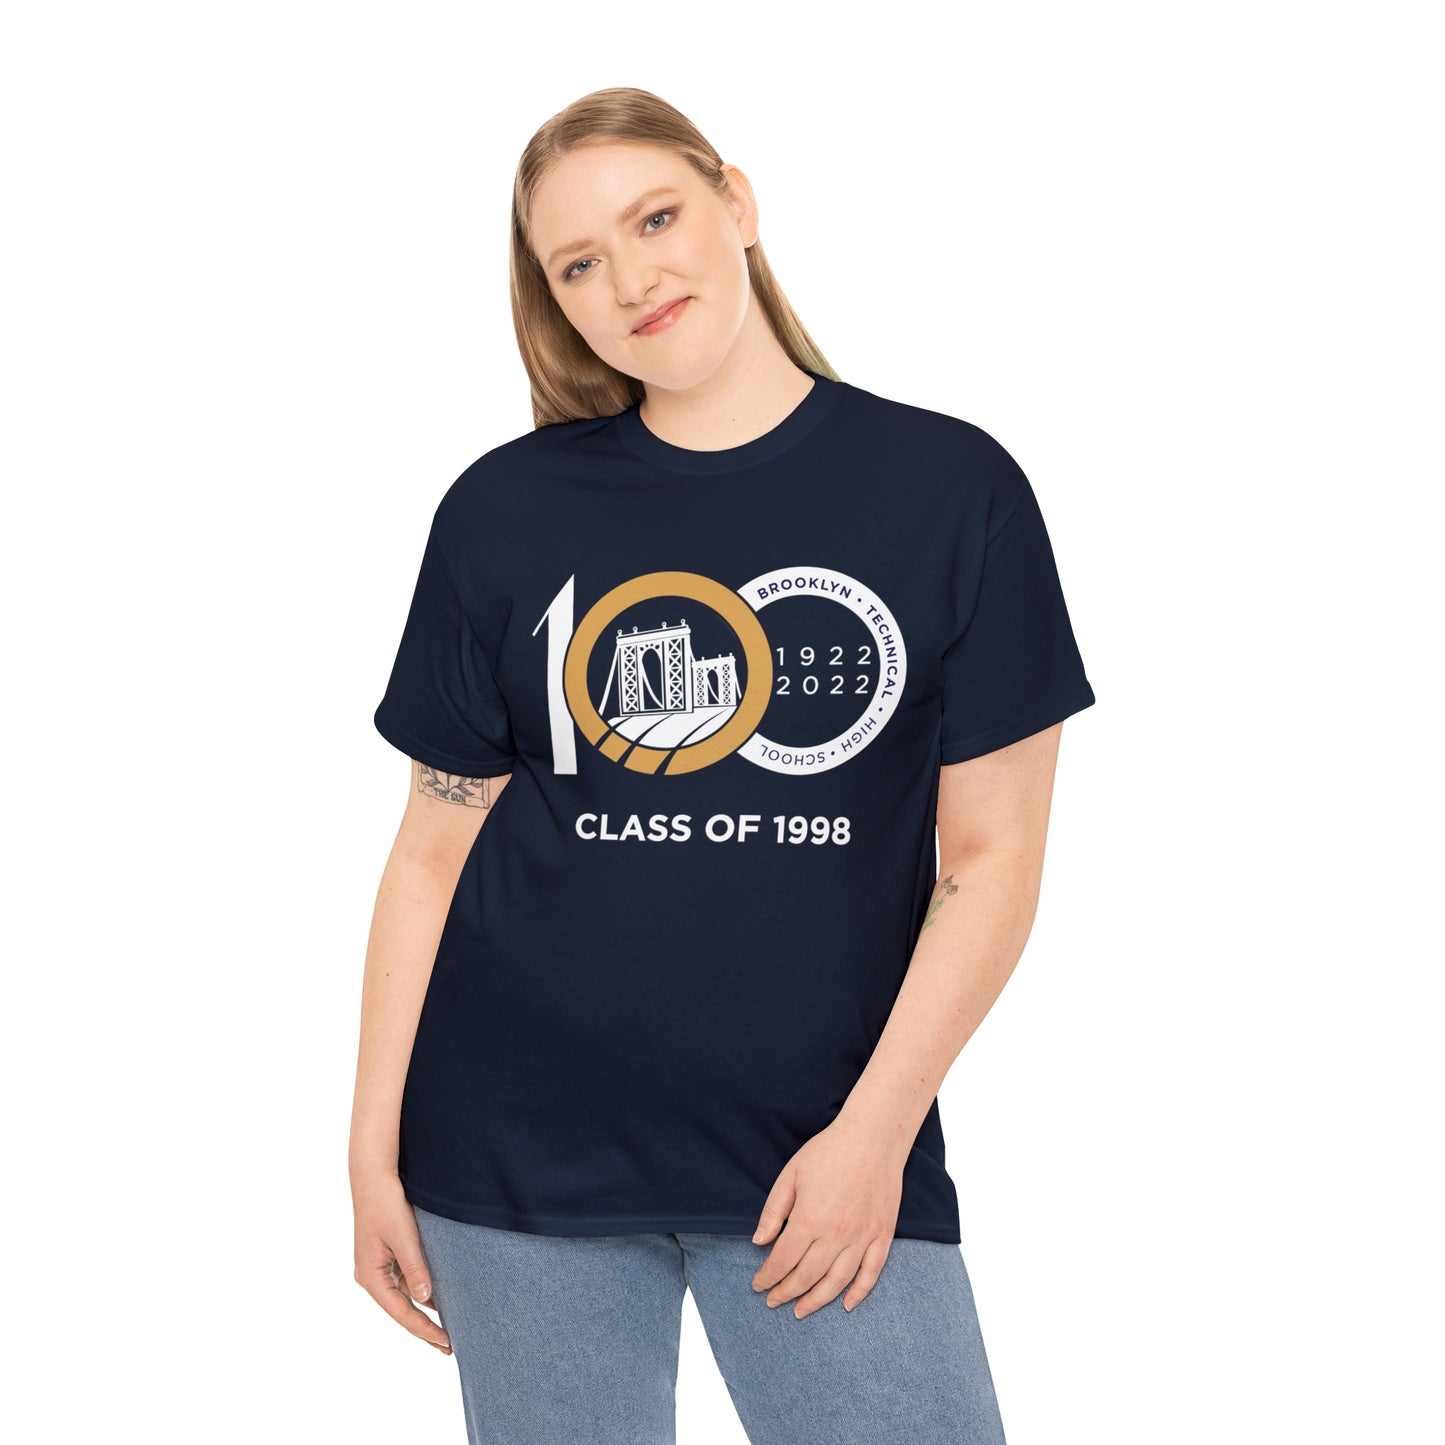 Centennial - Men's Heavy Cotton T-Shirt - Class Of 1998